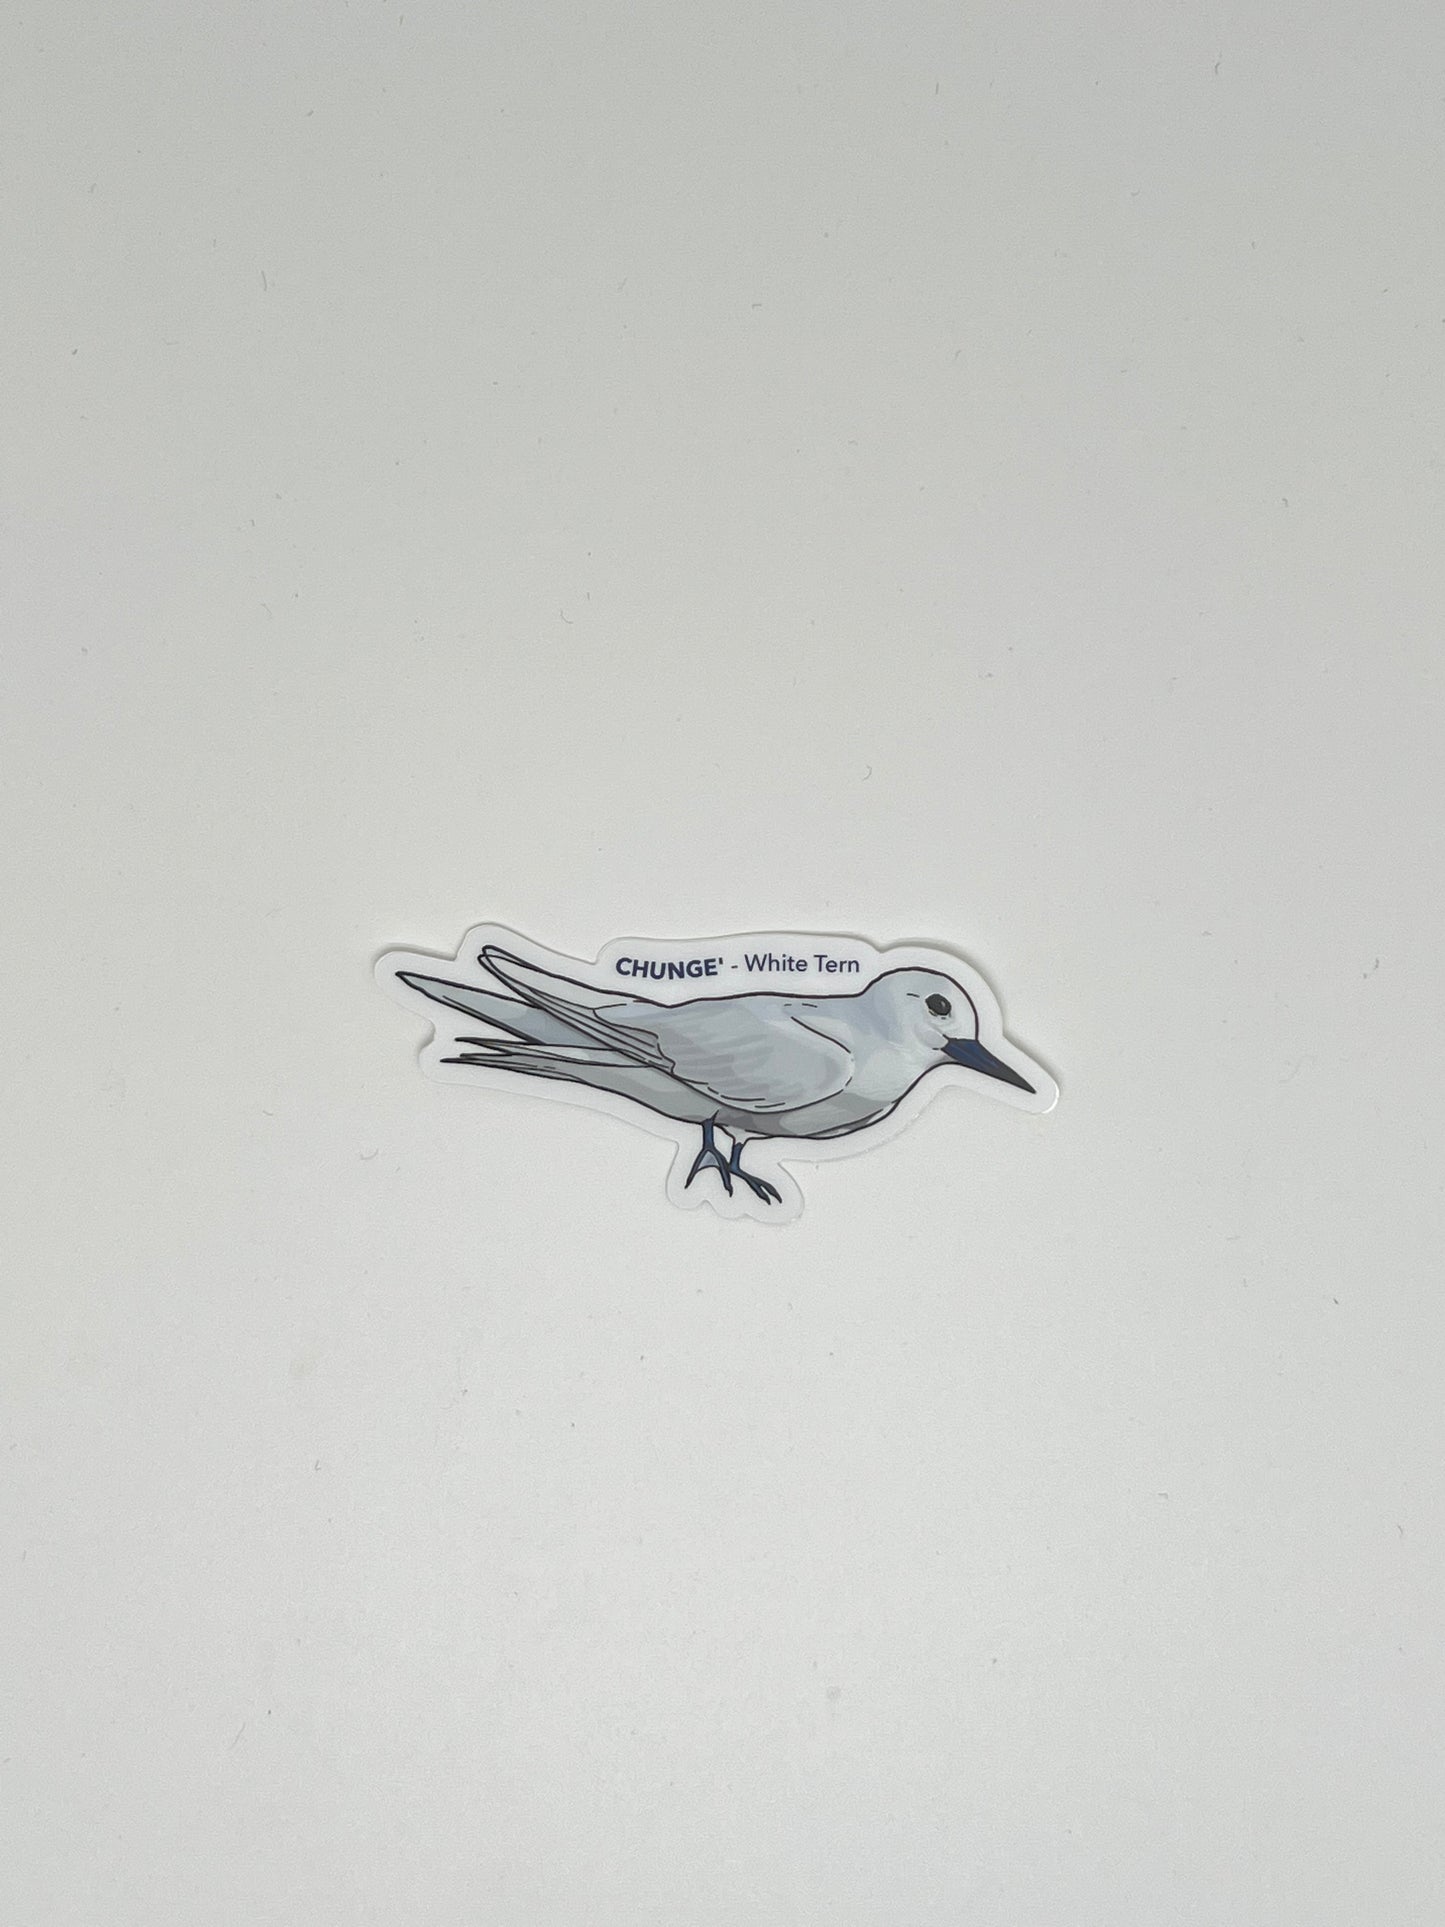 White Tern -Chunge’